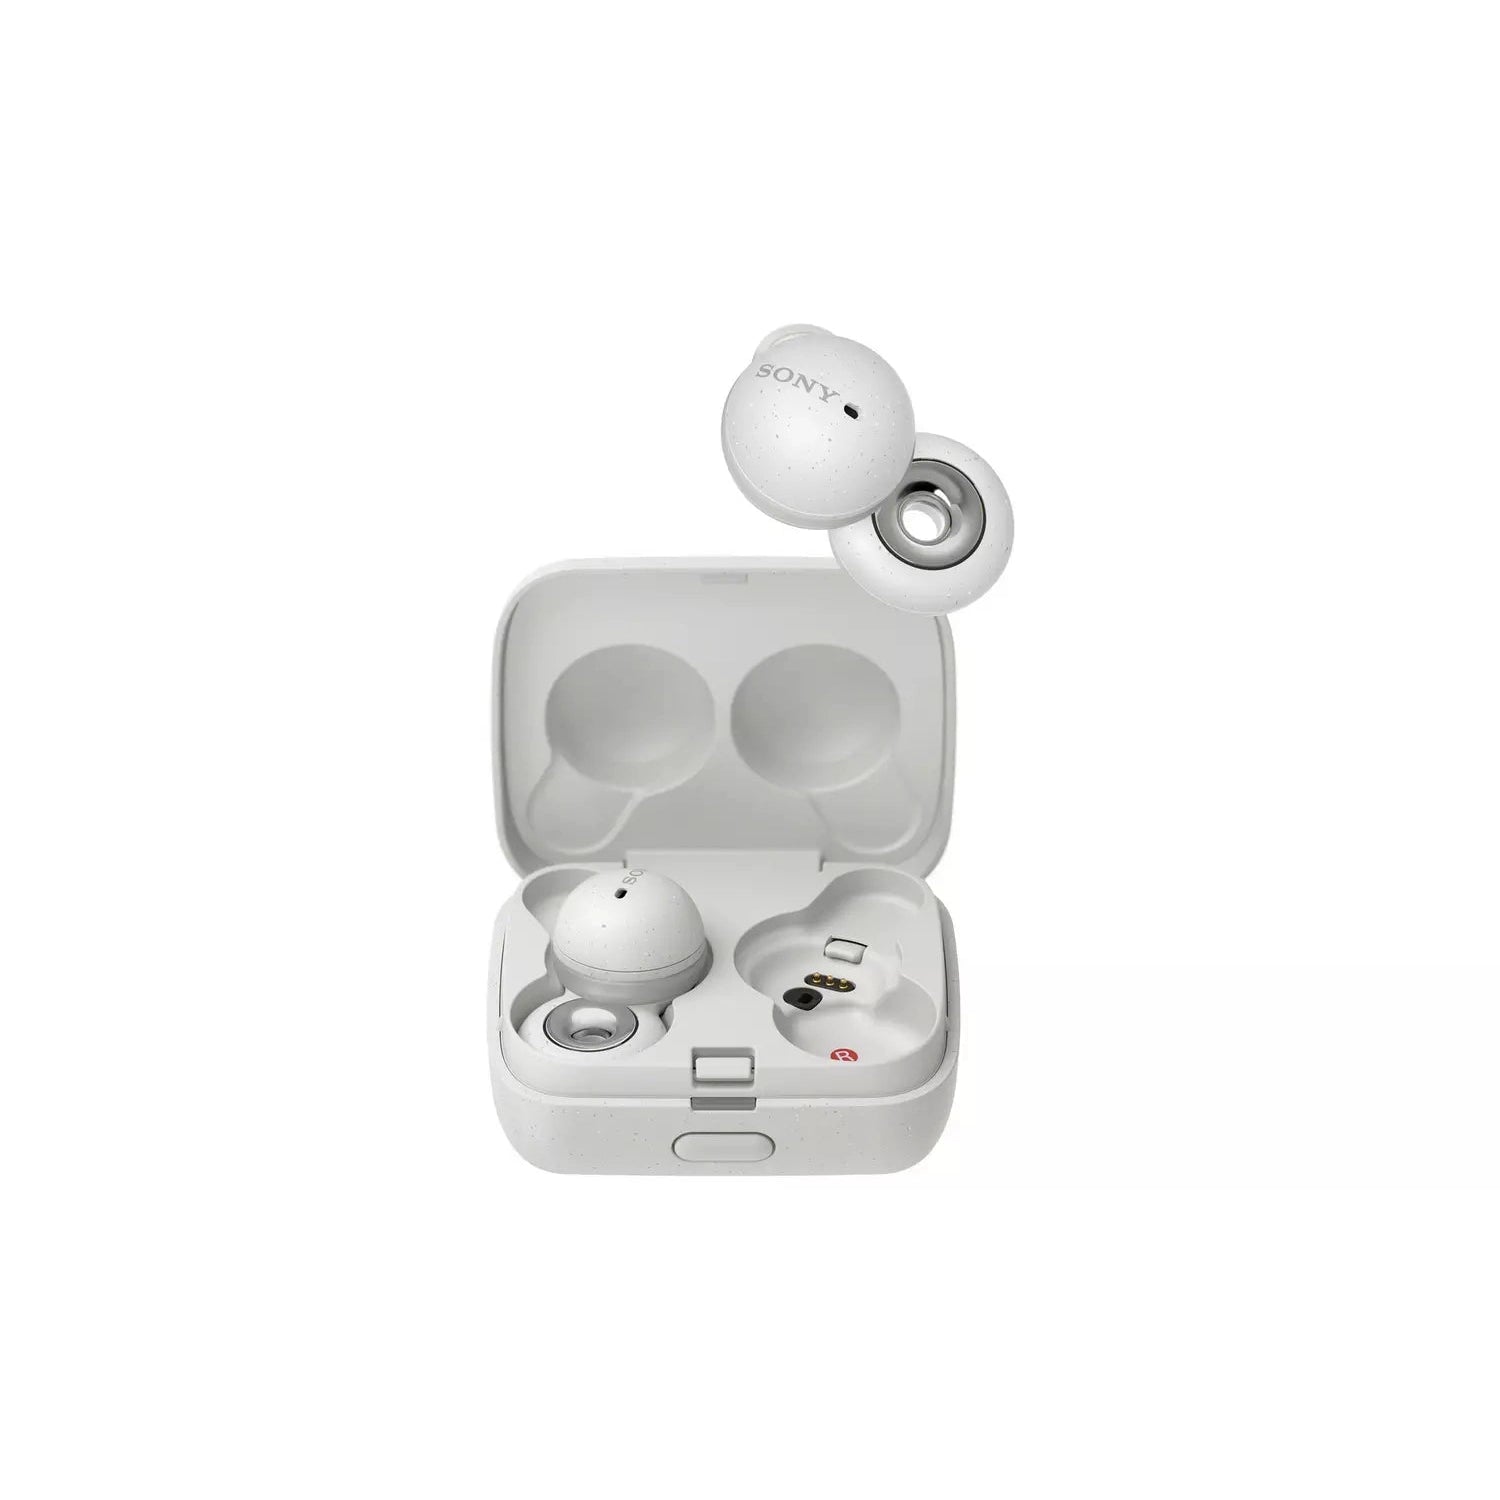 Sony WF-L900 LinkBuds True Wireless Bluetooth In-Ear Headphones - Whit